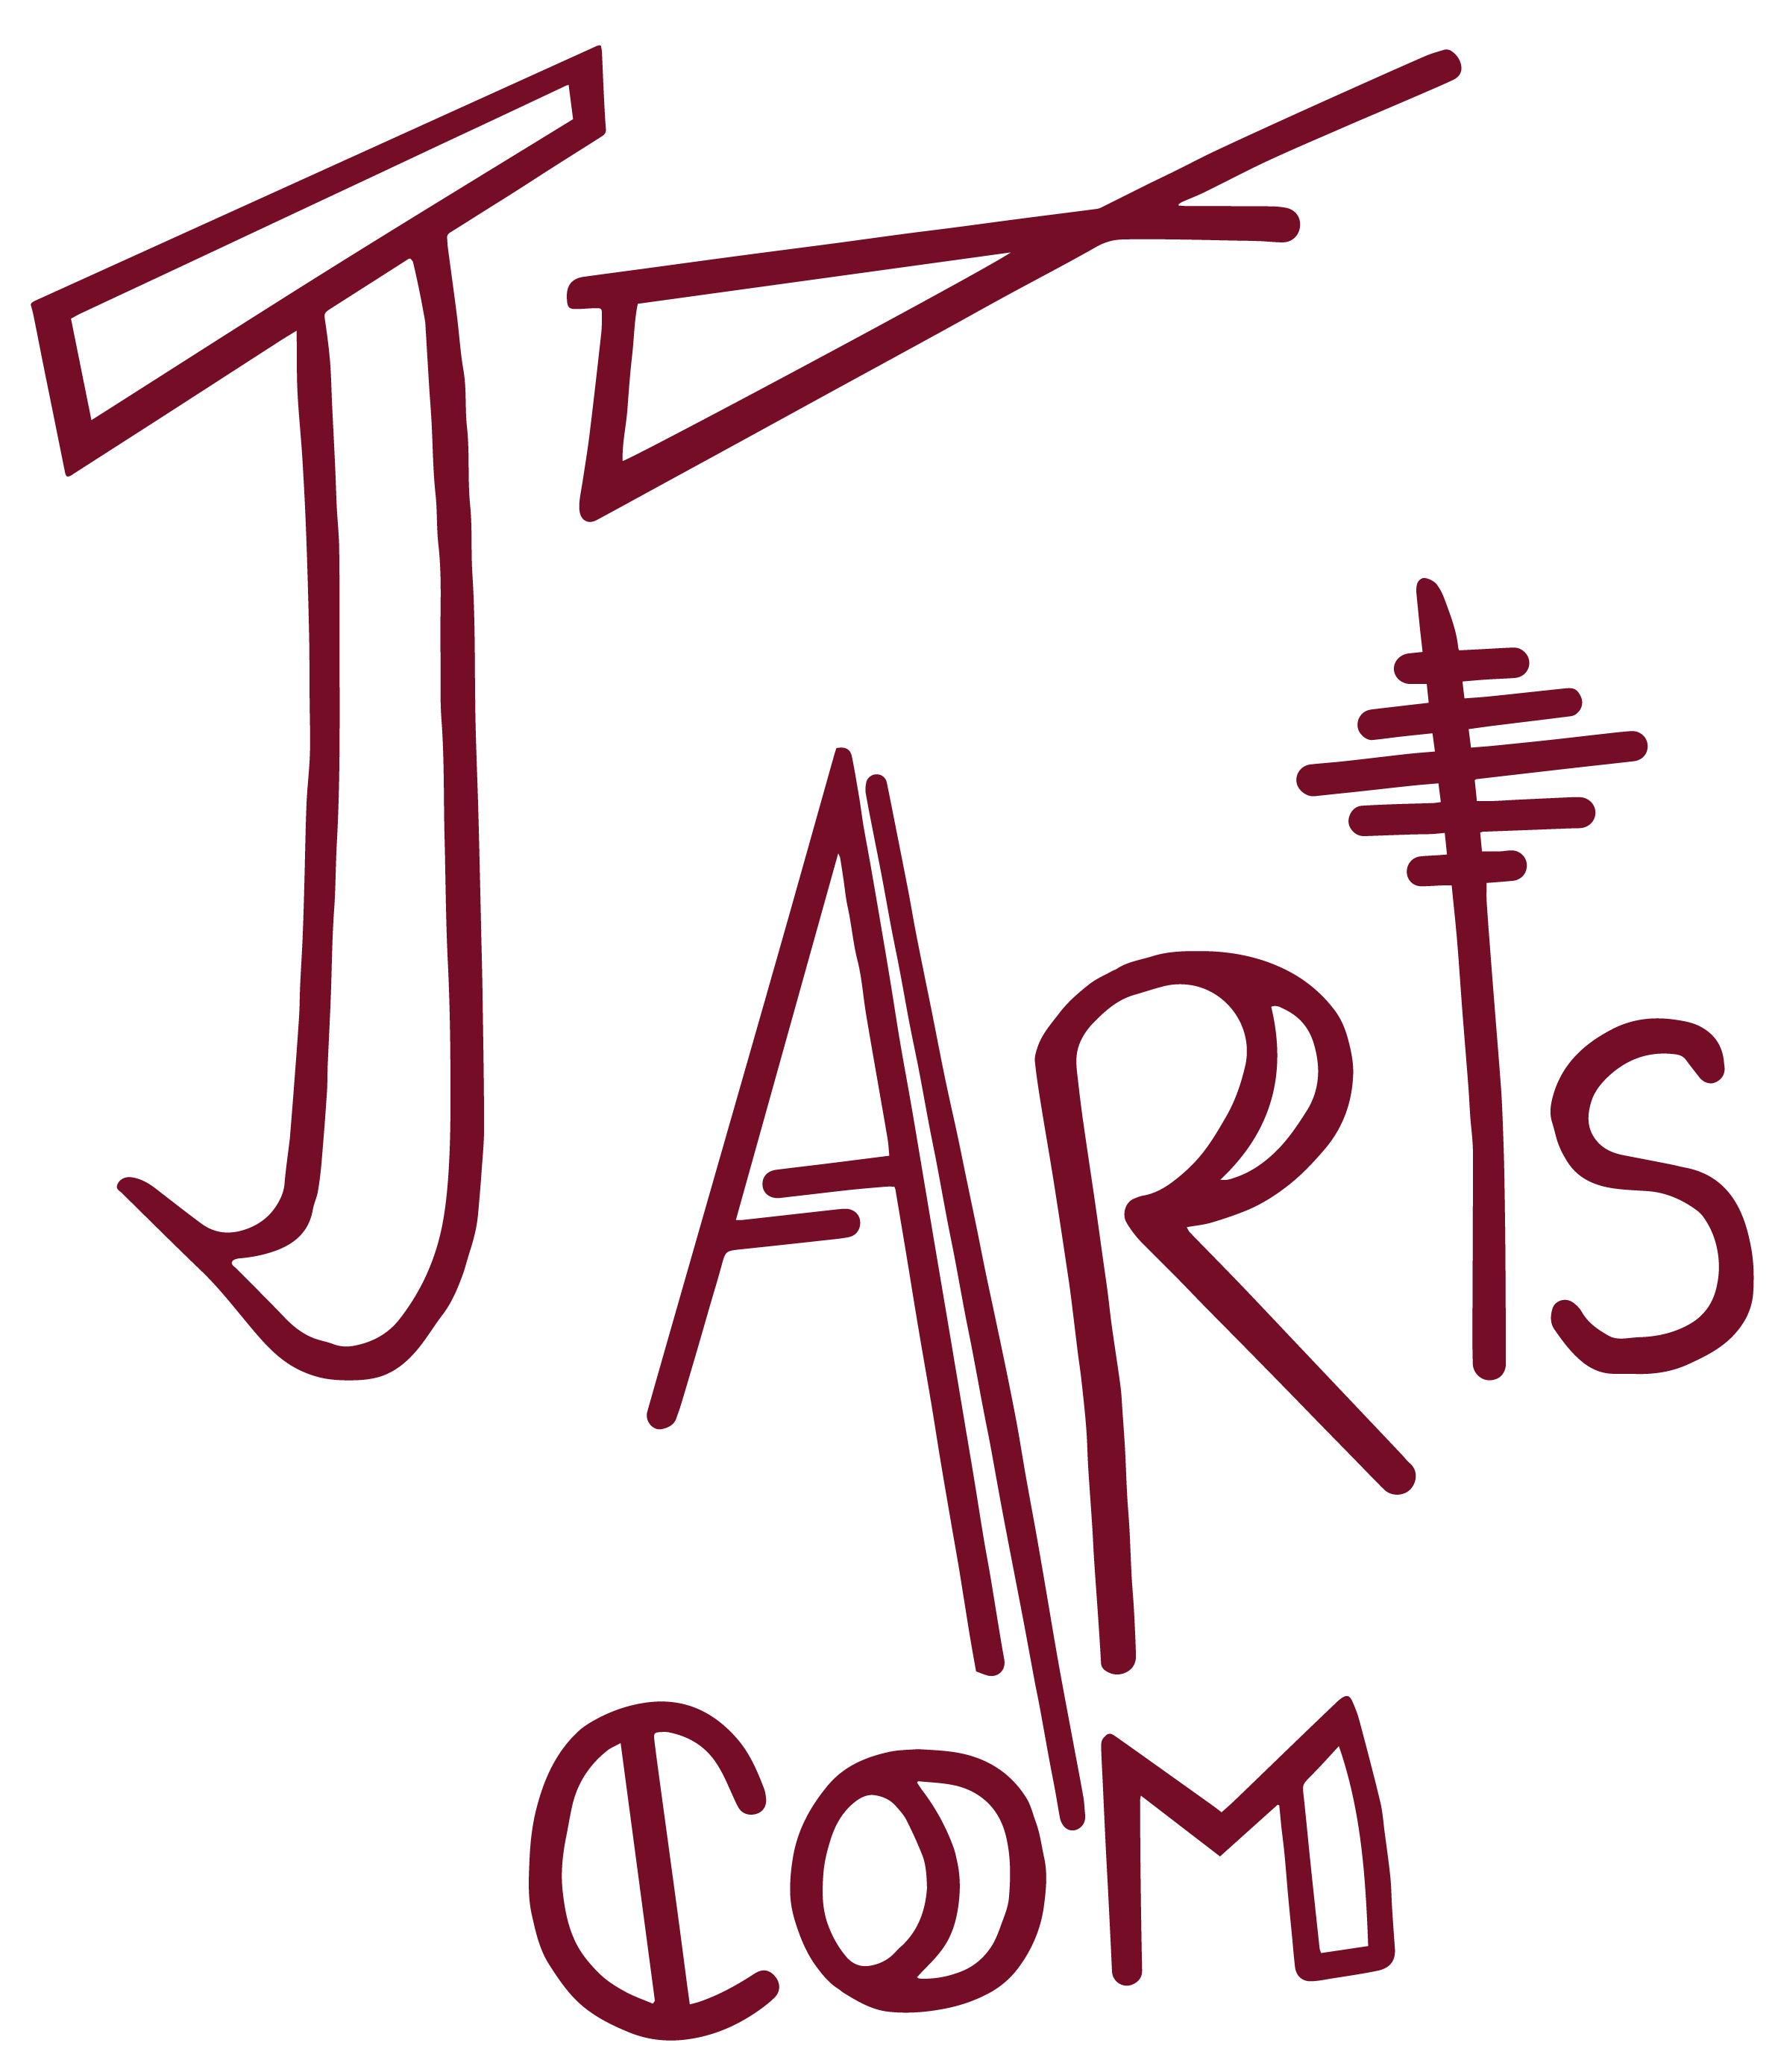 Logo-Jartscom-violet- fond transparent